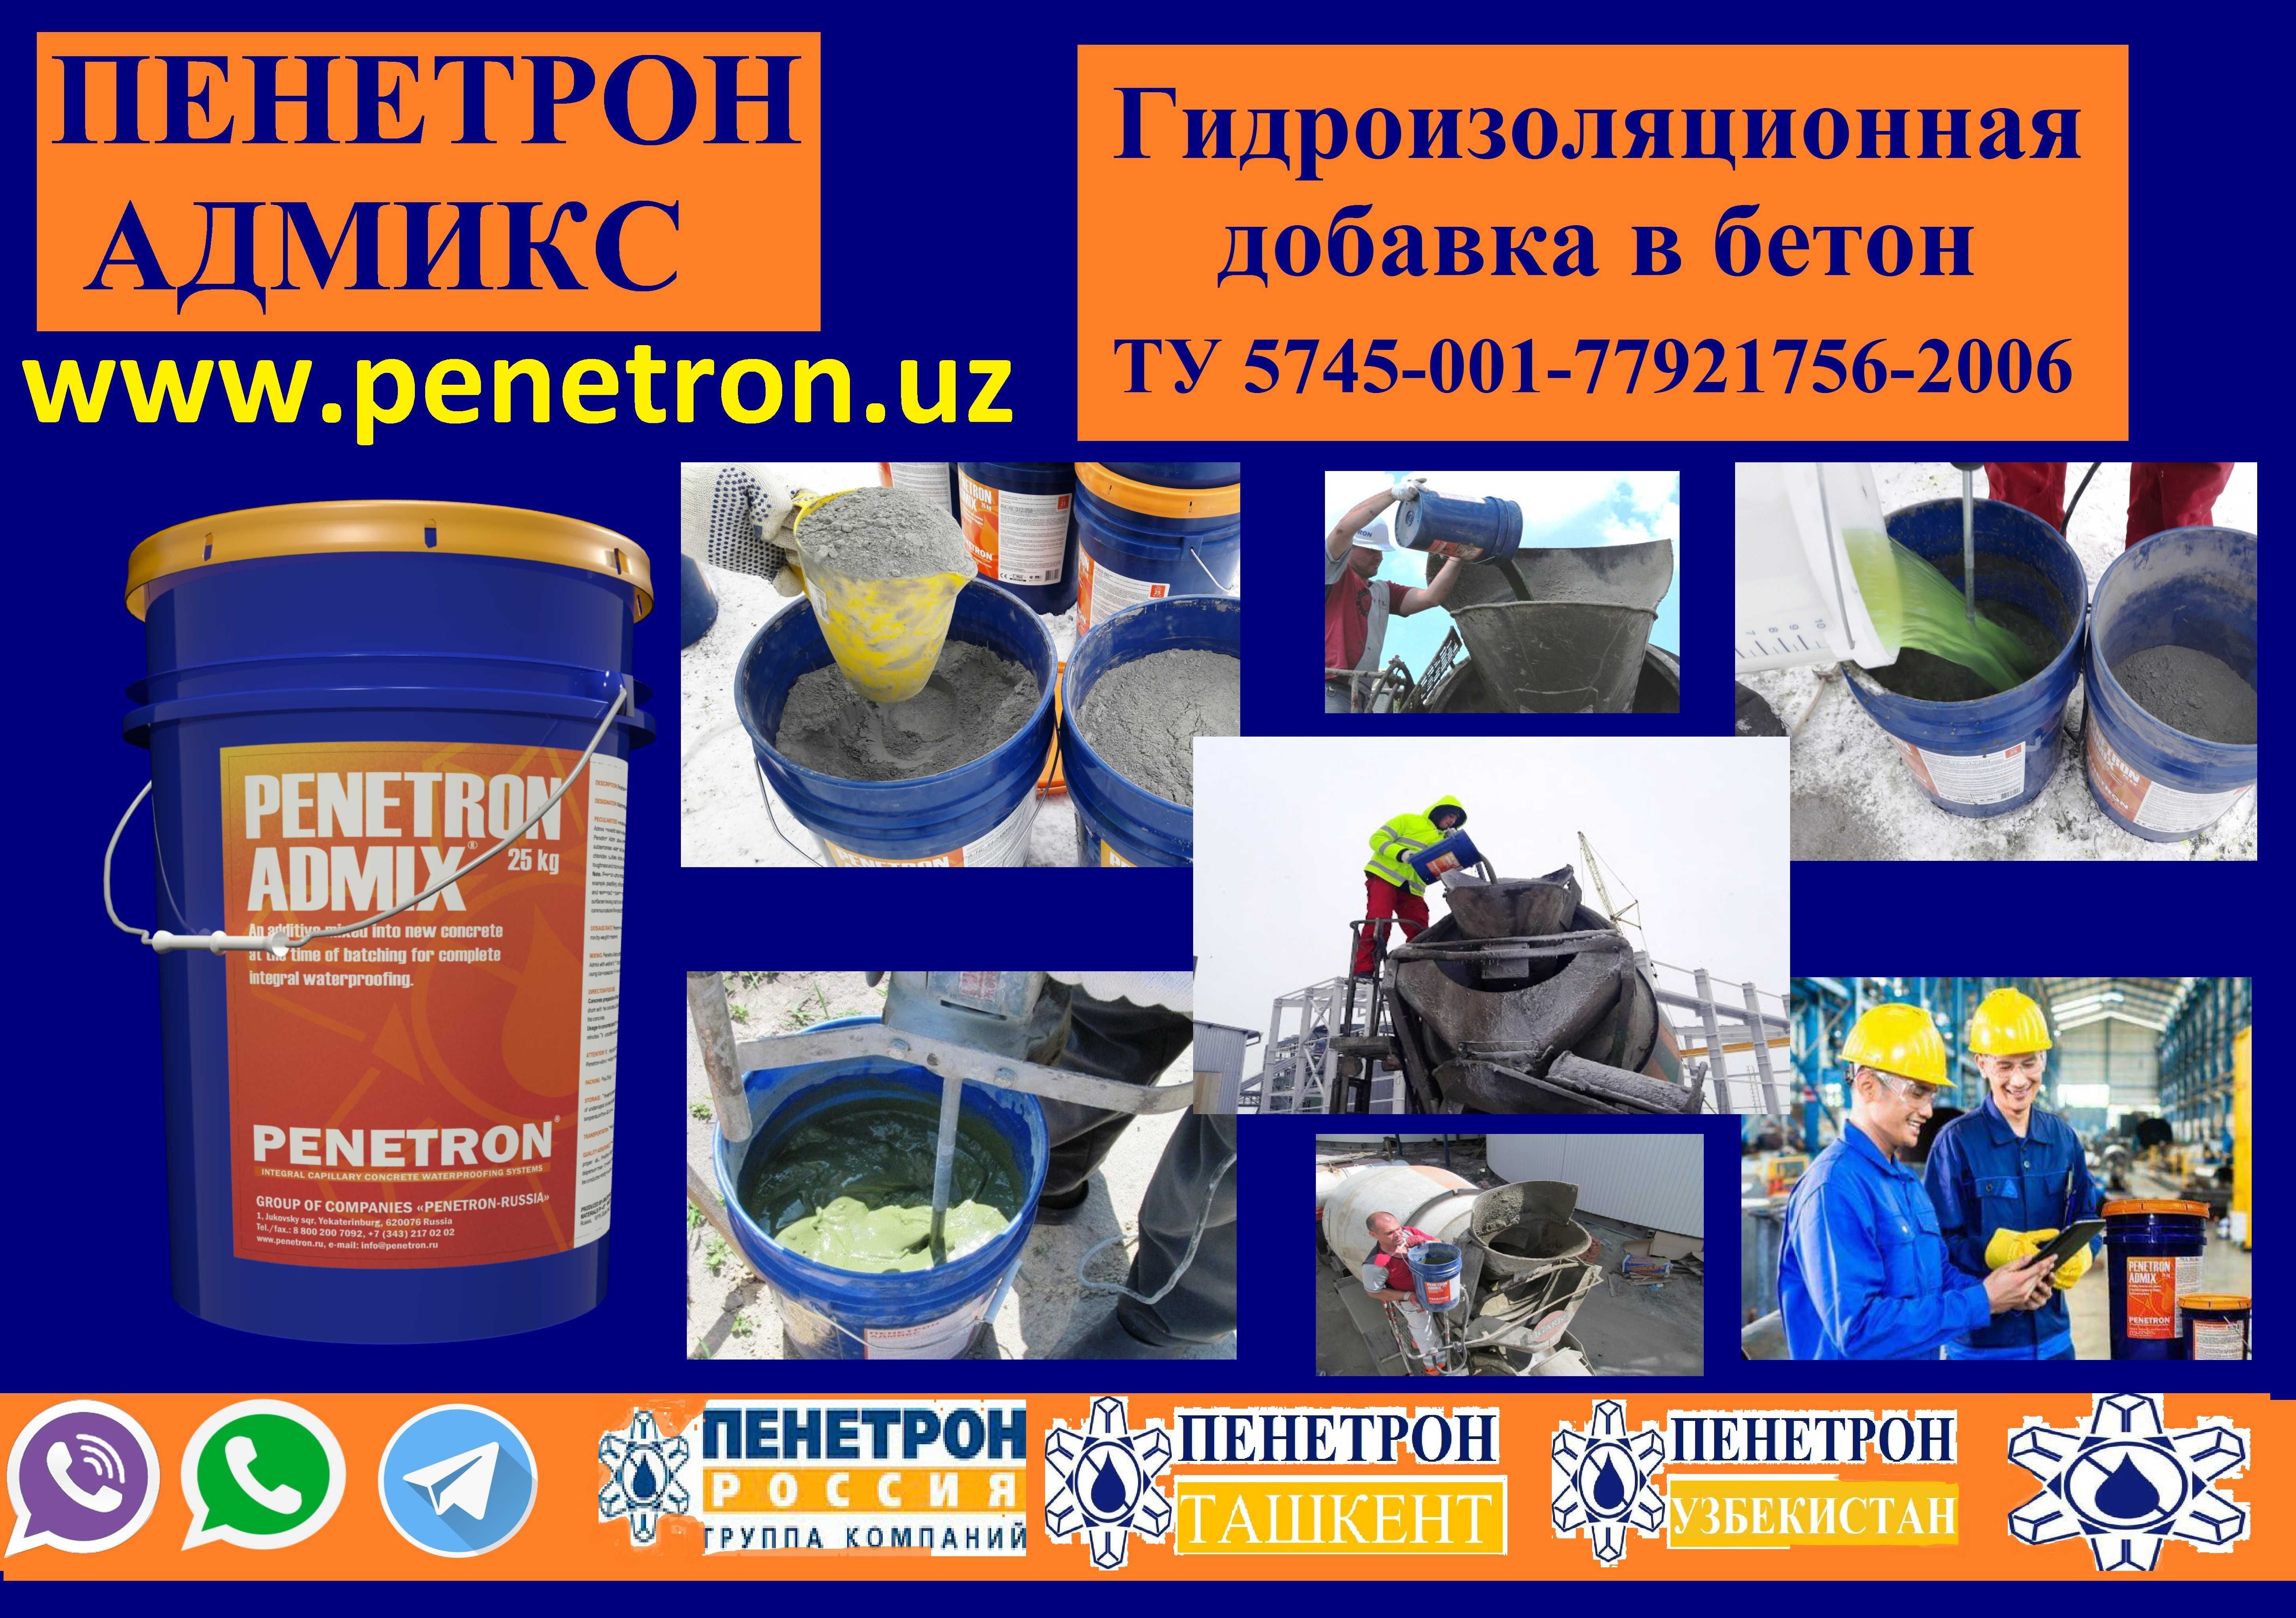 Penetron Admix Гидроизоляционная добавка в бетон Гидроизоляция Пенетро